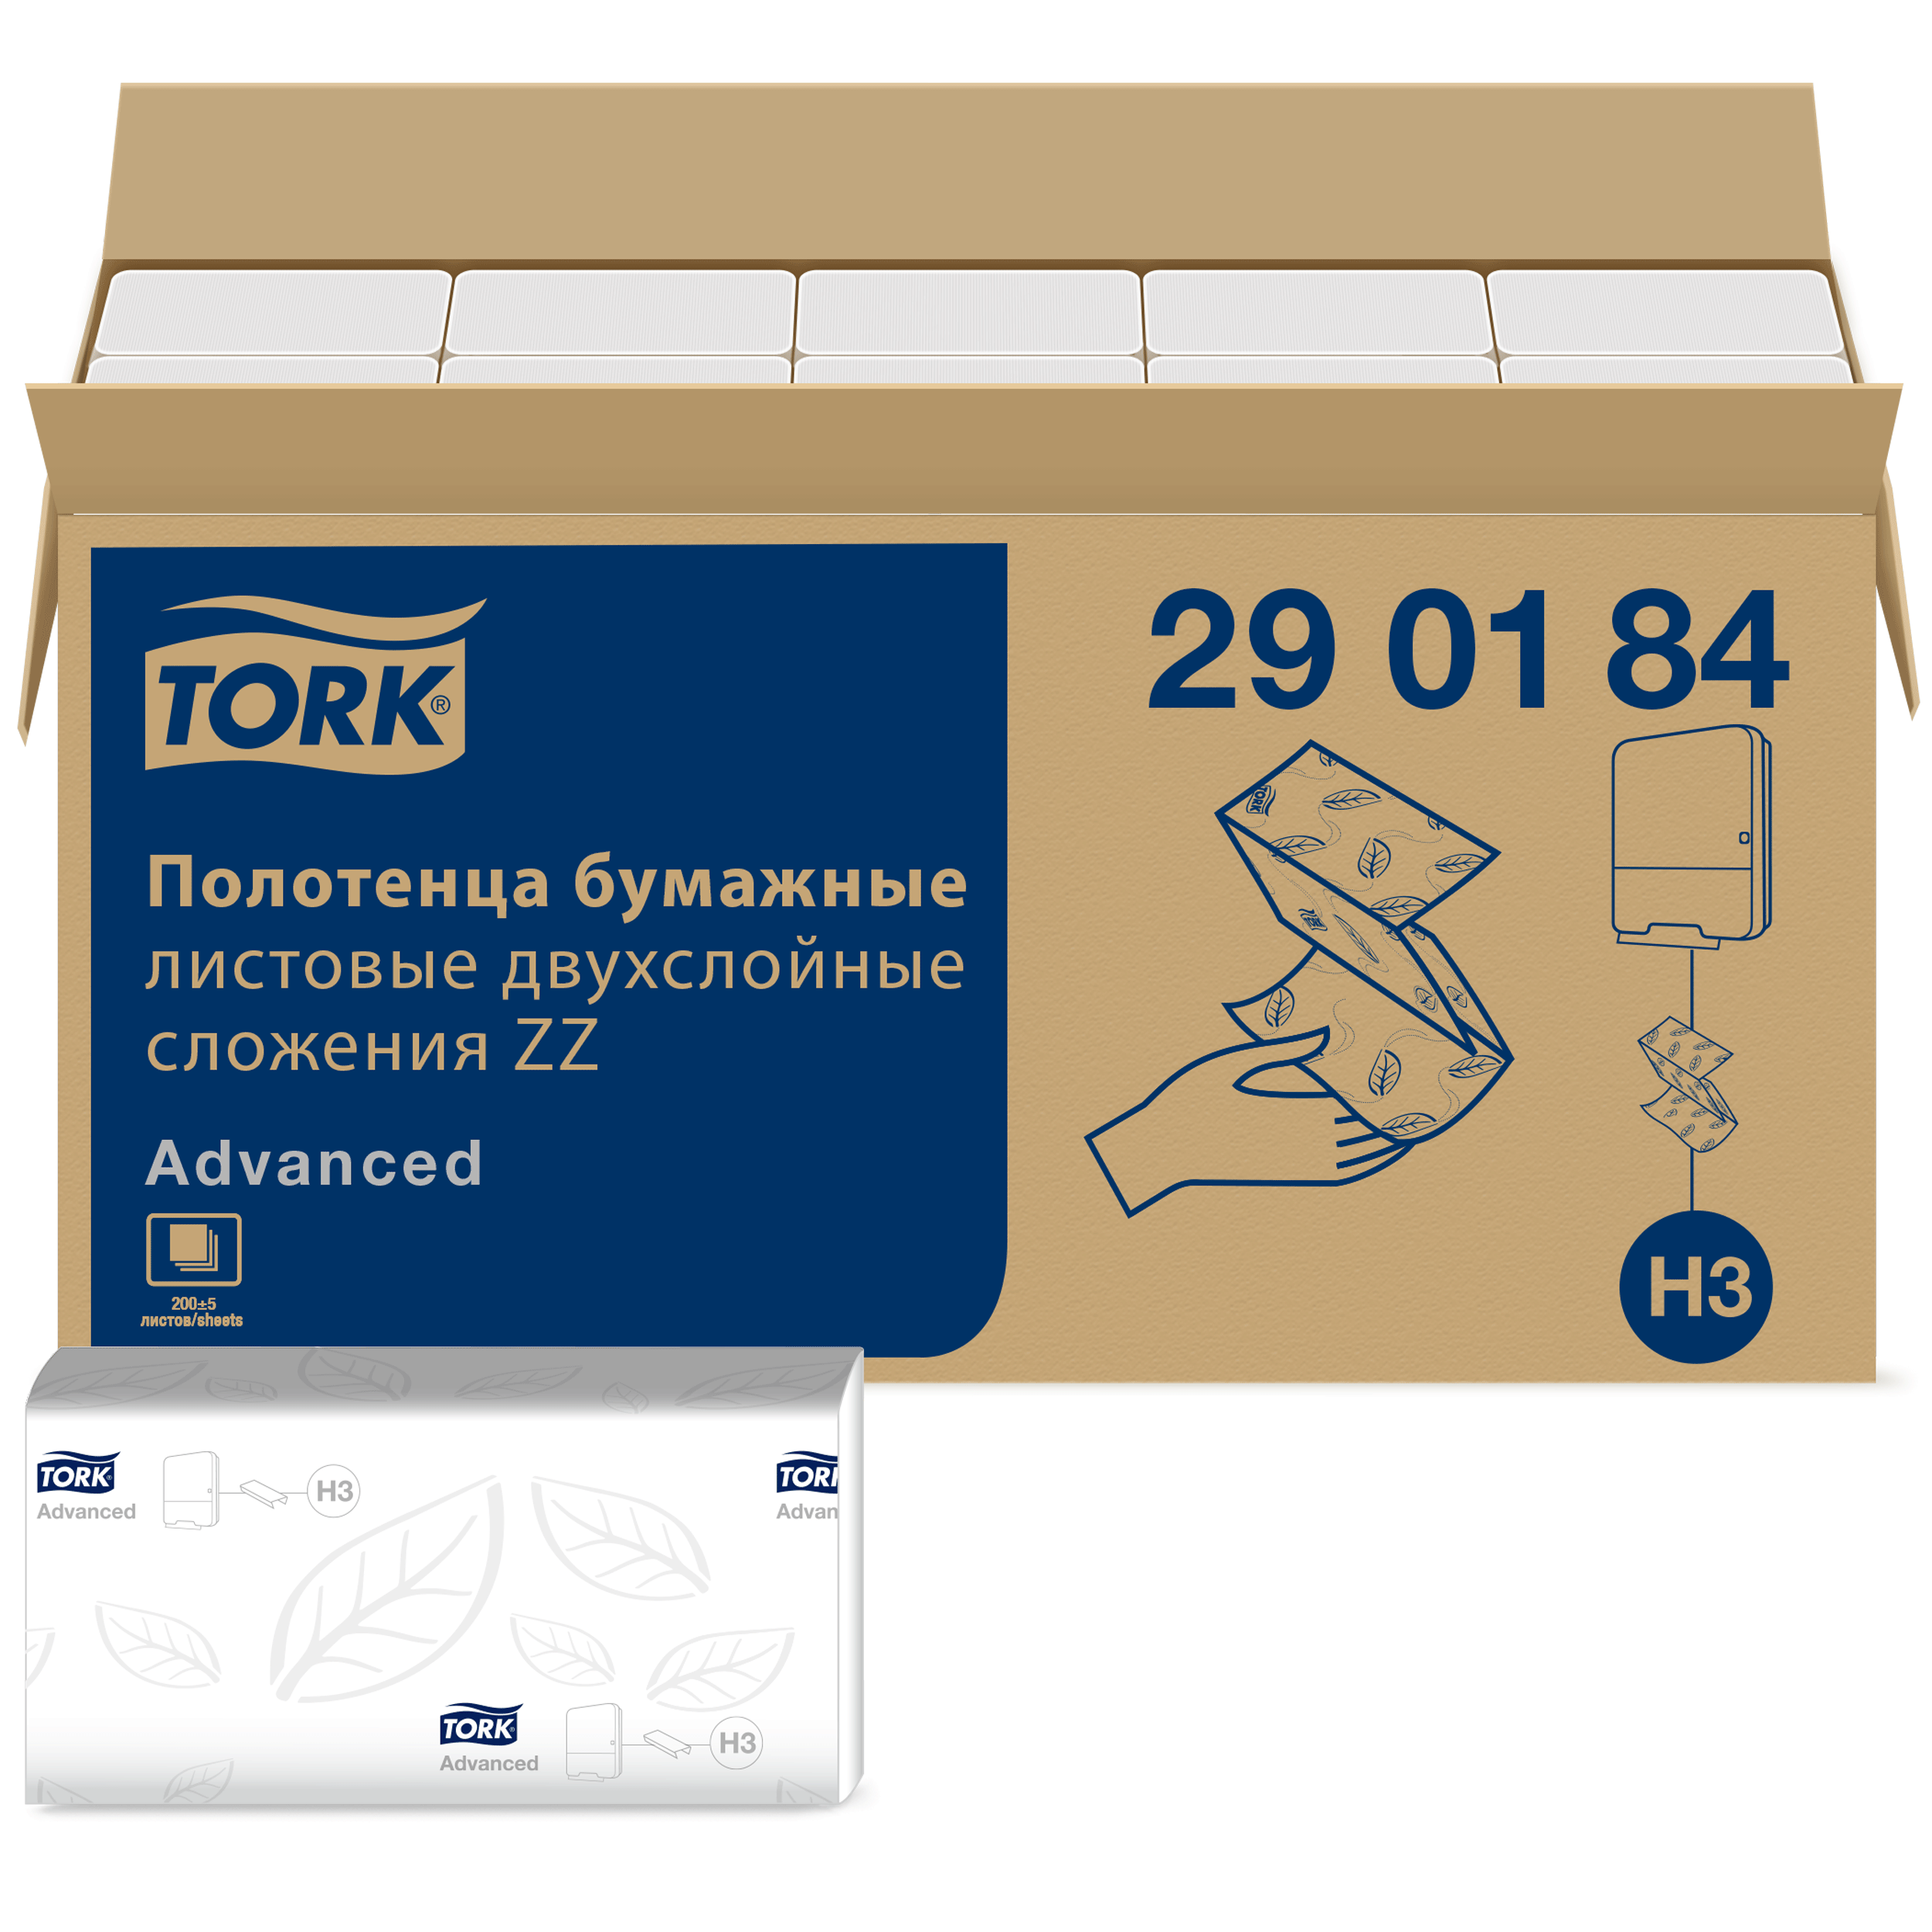 Полотенце tork сложение zz. 290184 Торк полотенца бумажные. Tork листовые полотенца Singlefold сложения ZZ 290184. Tork h3 Advanced. Листовые полотенца Tork Singlefold сложения ZZ Advanced белые, н3 2/200/20.